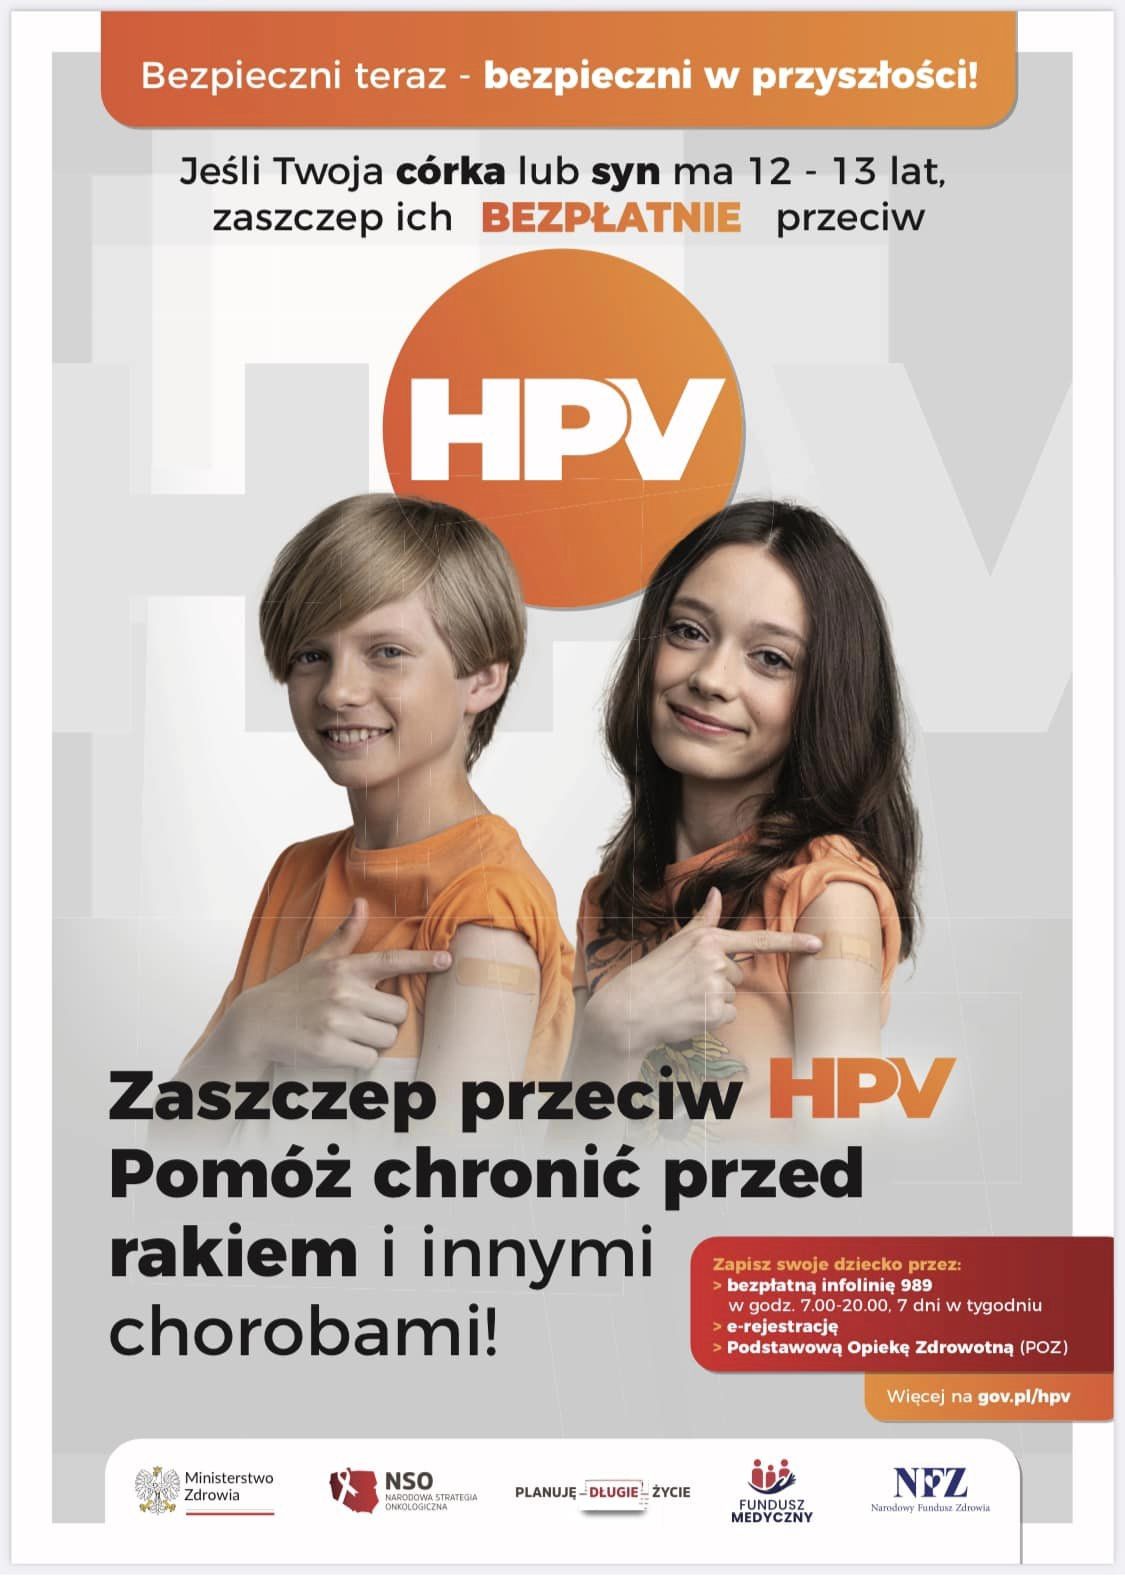 bezplatne-szczepienia-przeciw-hpv-dla-12-i-13-latkow